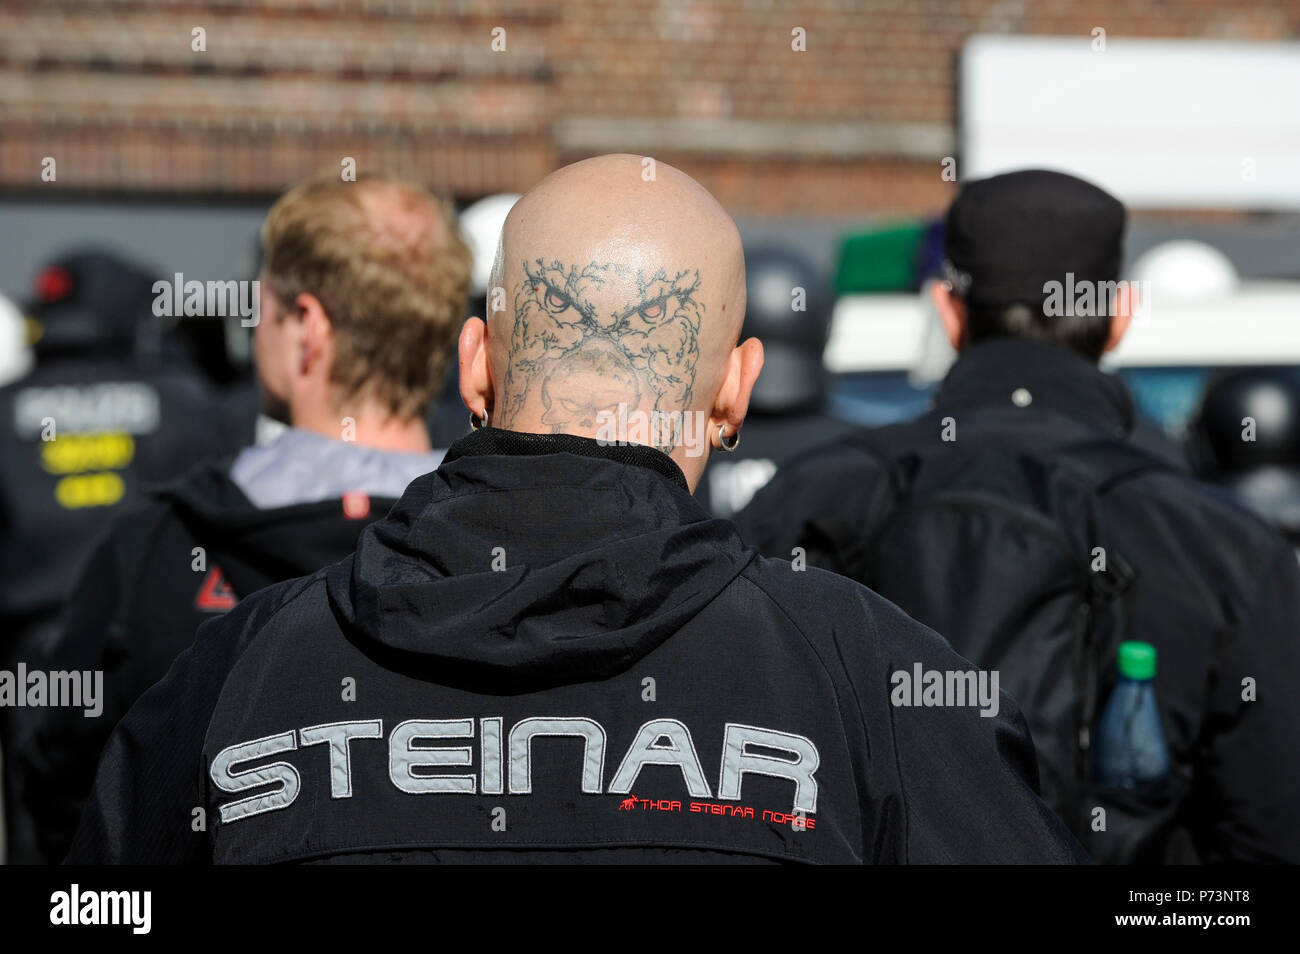 Germania, rally del nazismo e del diritto dei gruppi estremisti in amburgo, testa di pelle di Thor Steinar Norge vestiti di marca, con testa tatuata, il gufo reale e testa di morte Foto Stock